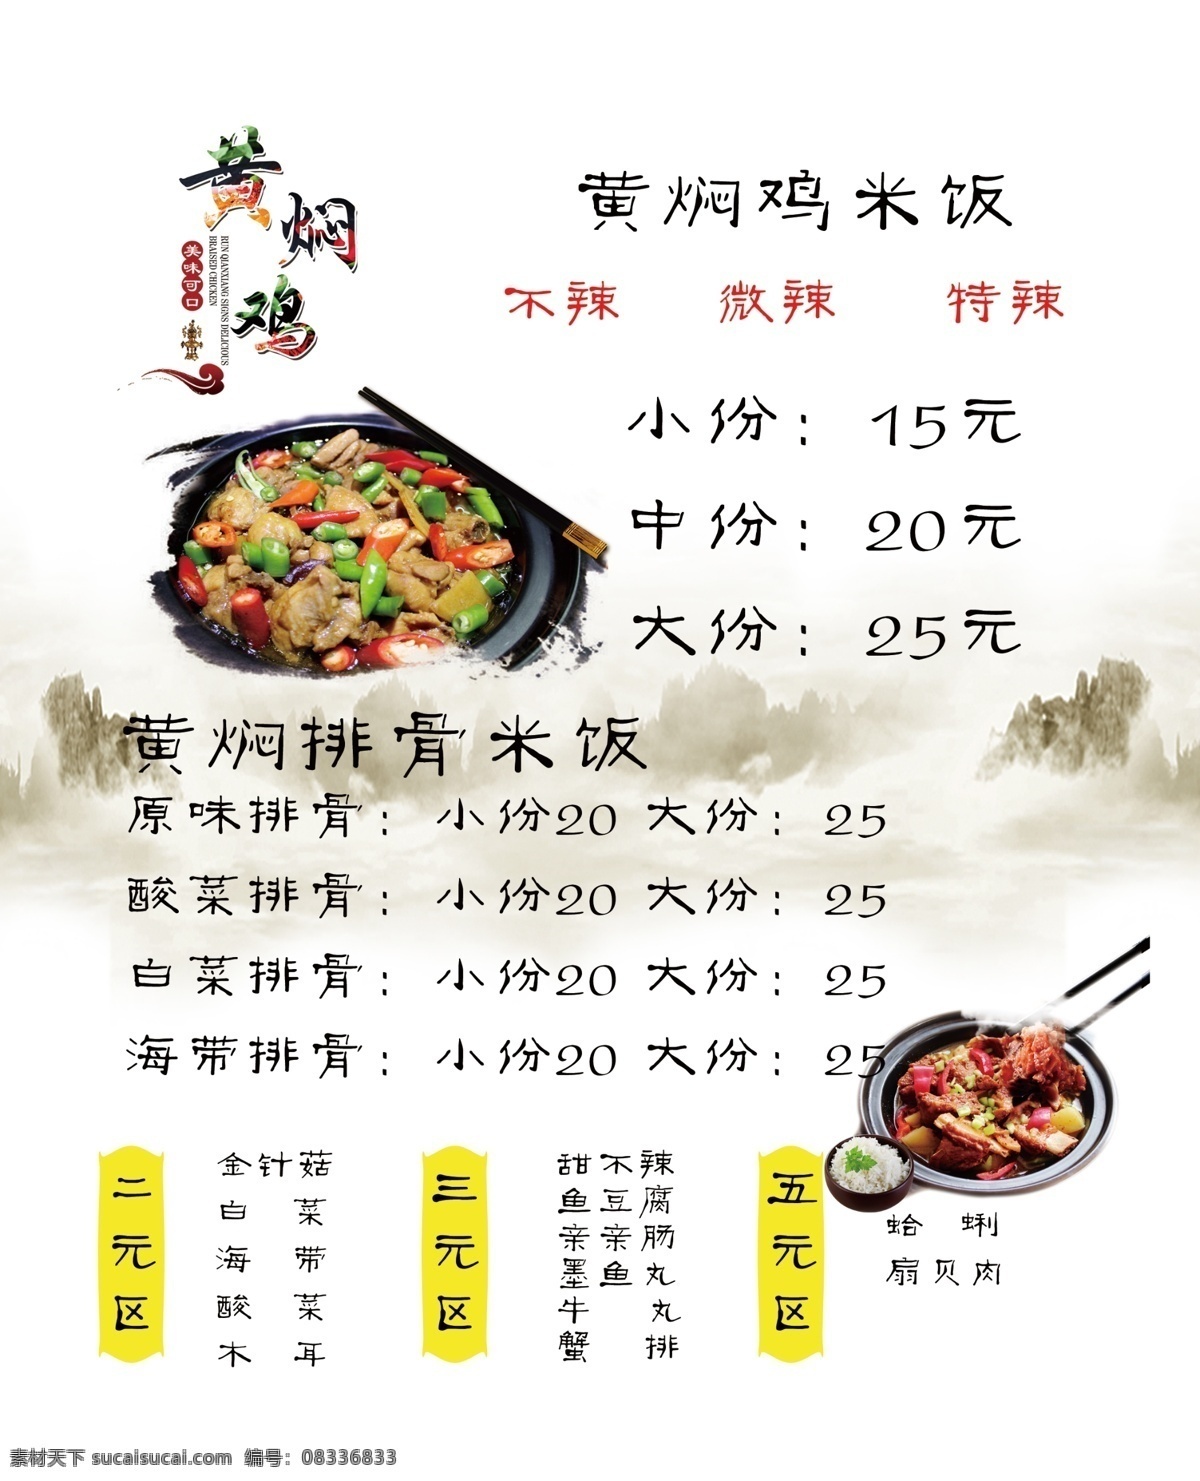 黄焖鸡价格表 黄焖鸡 排骨米饭 价格 价格表 灯箱片 菜单菜谱